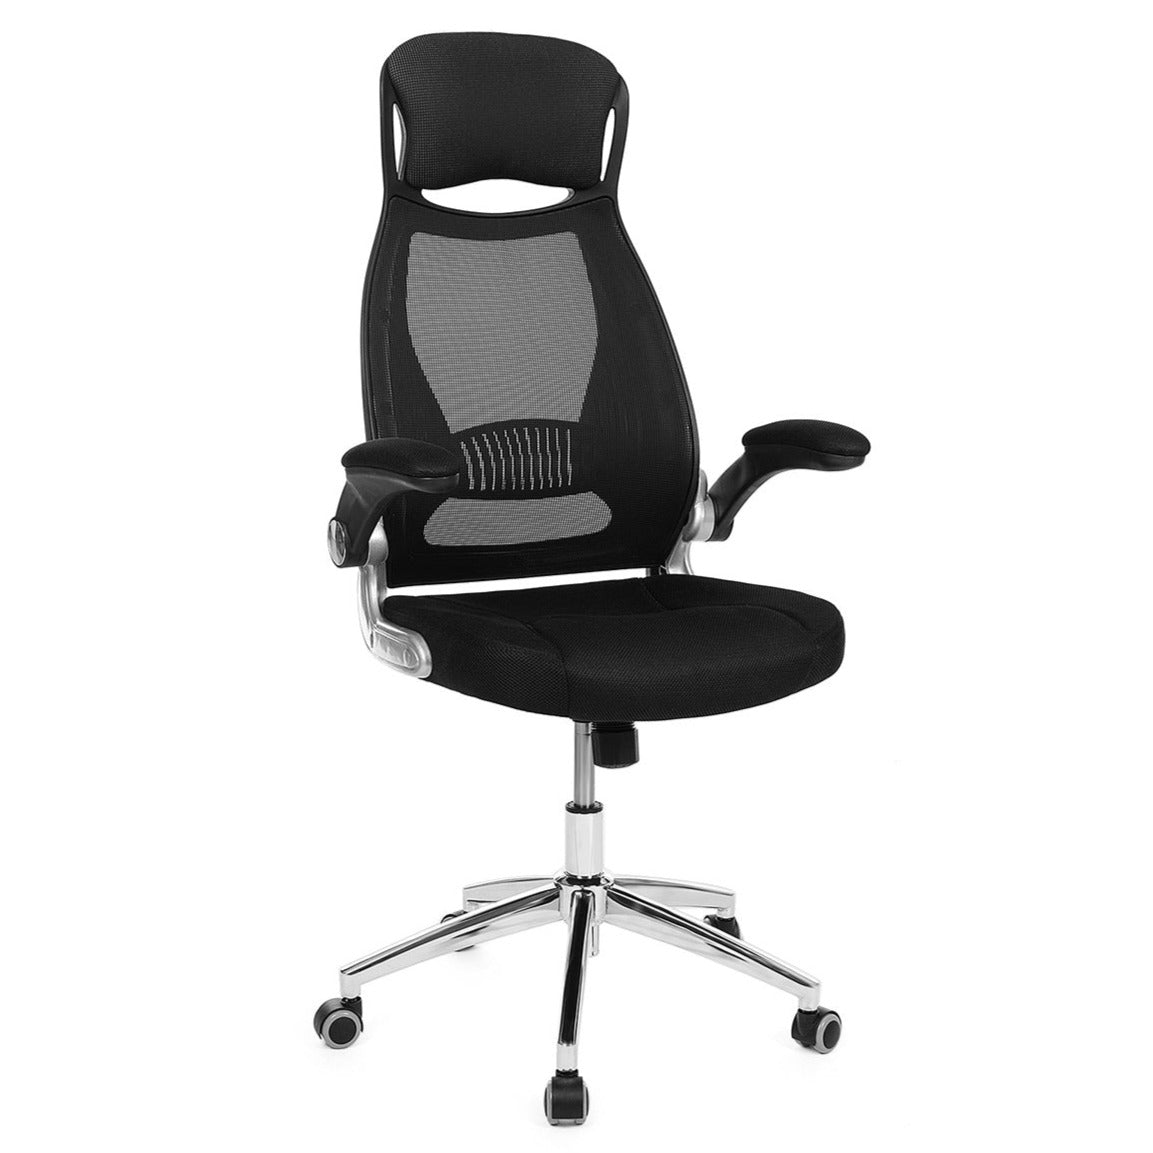 Fauteuil siège chaise de bureau ergonomique pivotant hauteur réglable  accoudoirs réglables dossier respirant en toile helloshop26 12_0001394 -  Conforama